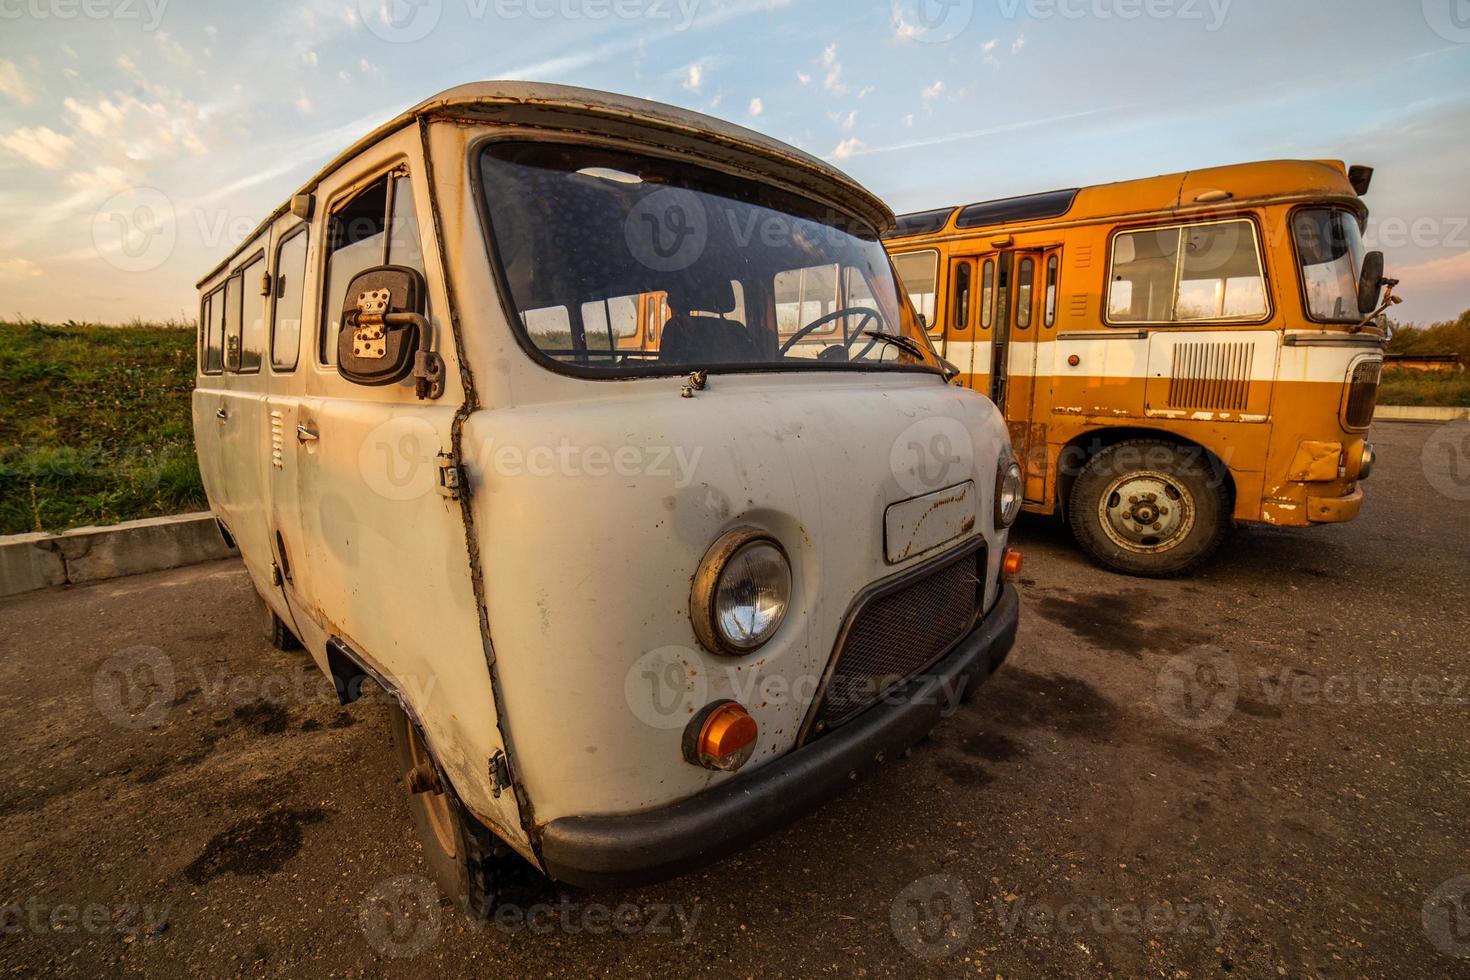 antiguo minibús soviético en el estacionamiento rústico de la noche de verano ultra gran angular foto